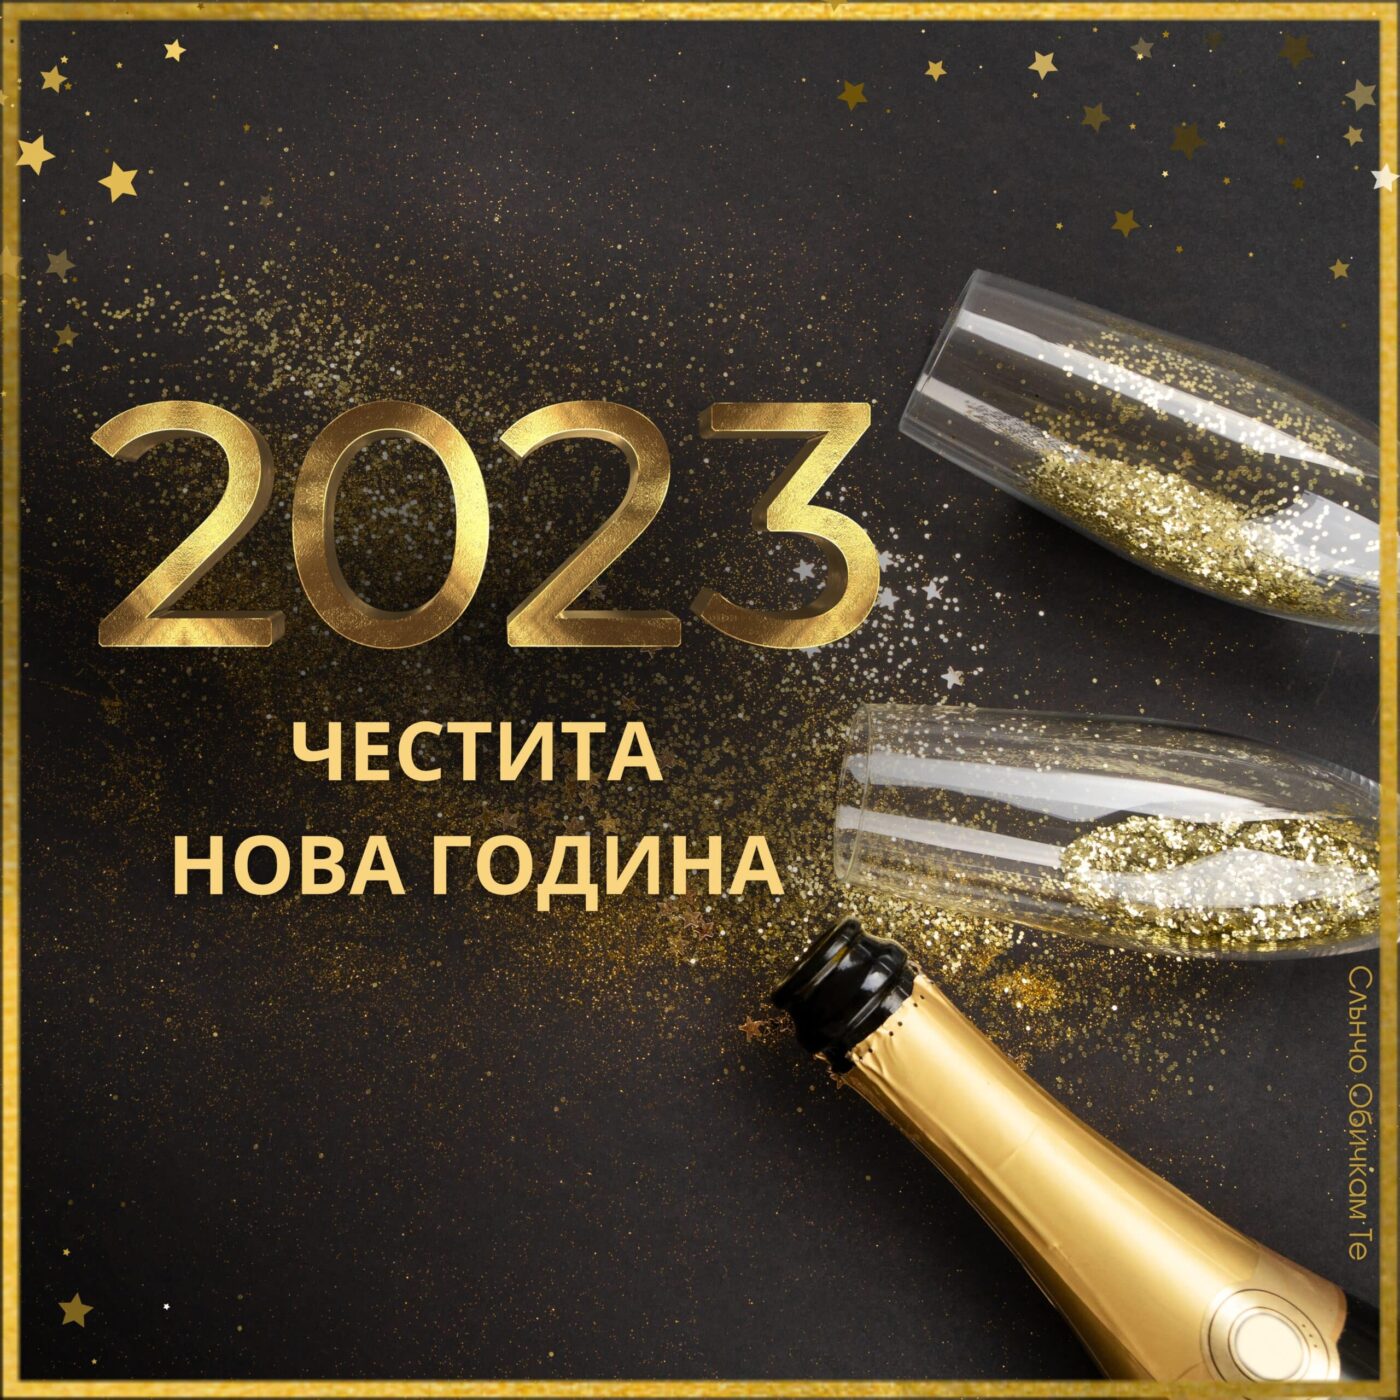 2023, Честита Нова година, новогодишни картички за 2023, за много години, картички за нова година, пожелания за нова година, sluncho, слънчо обичкам те, новогодишни